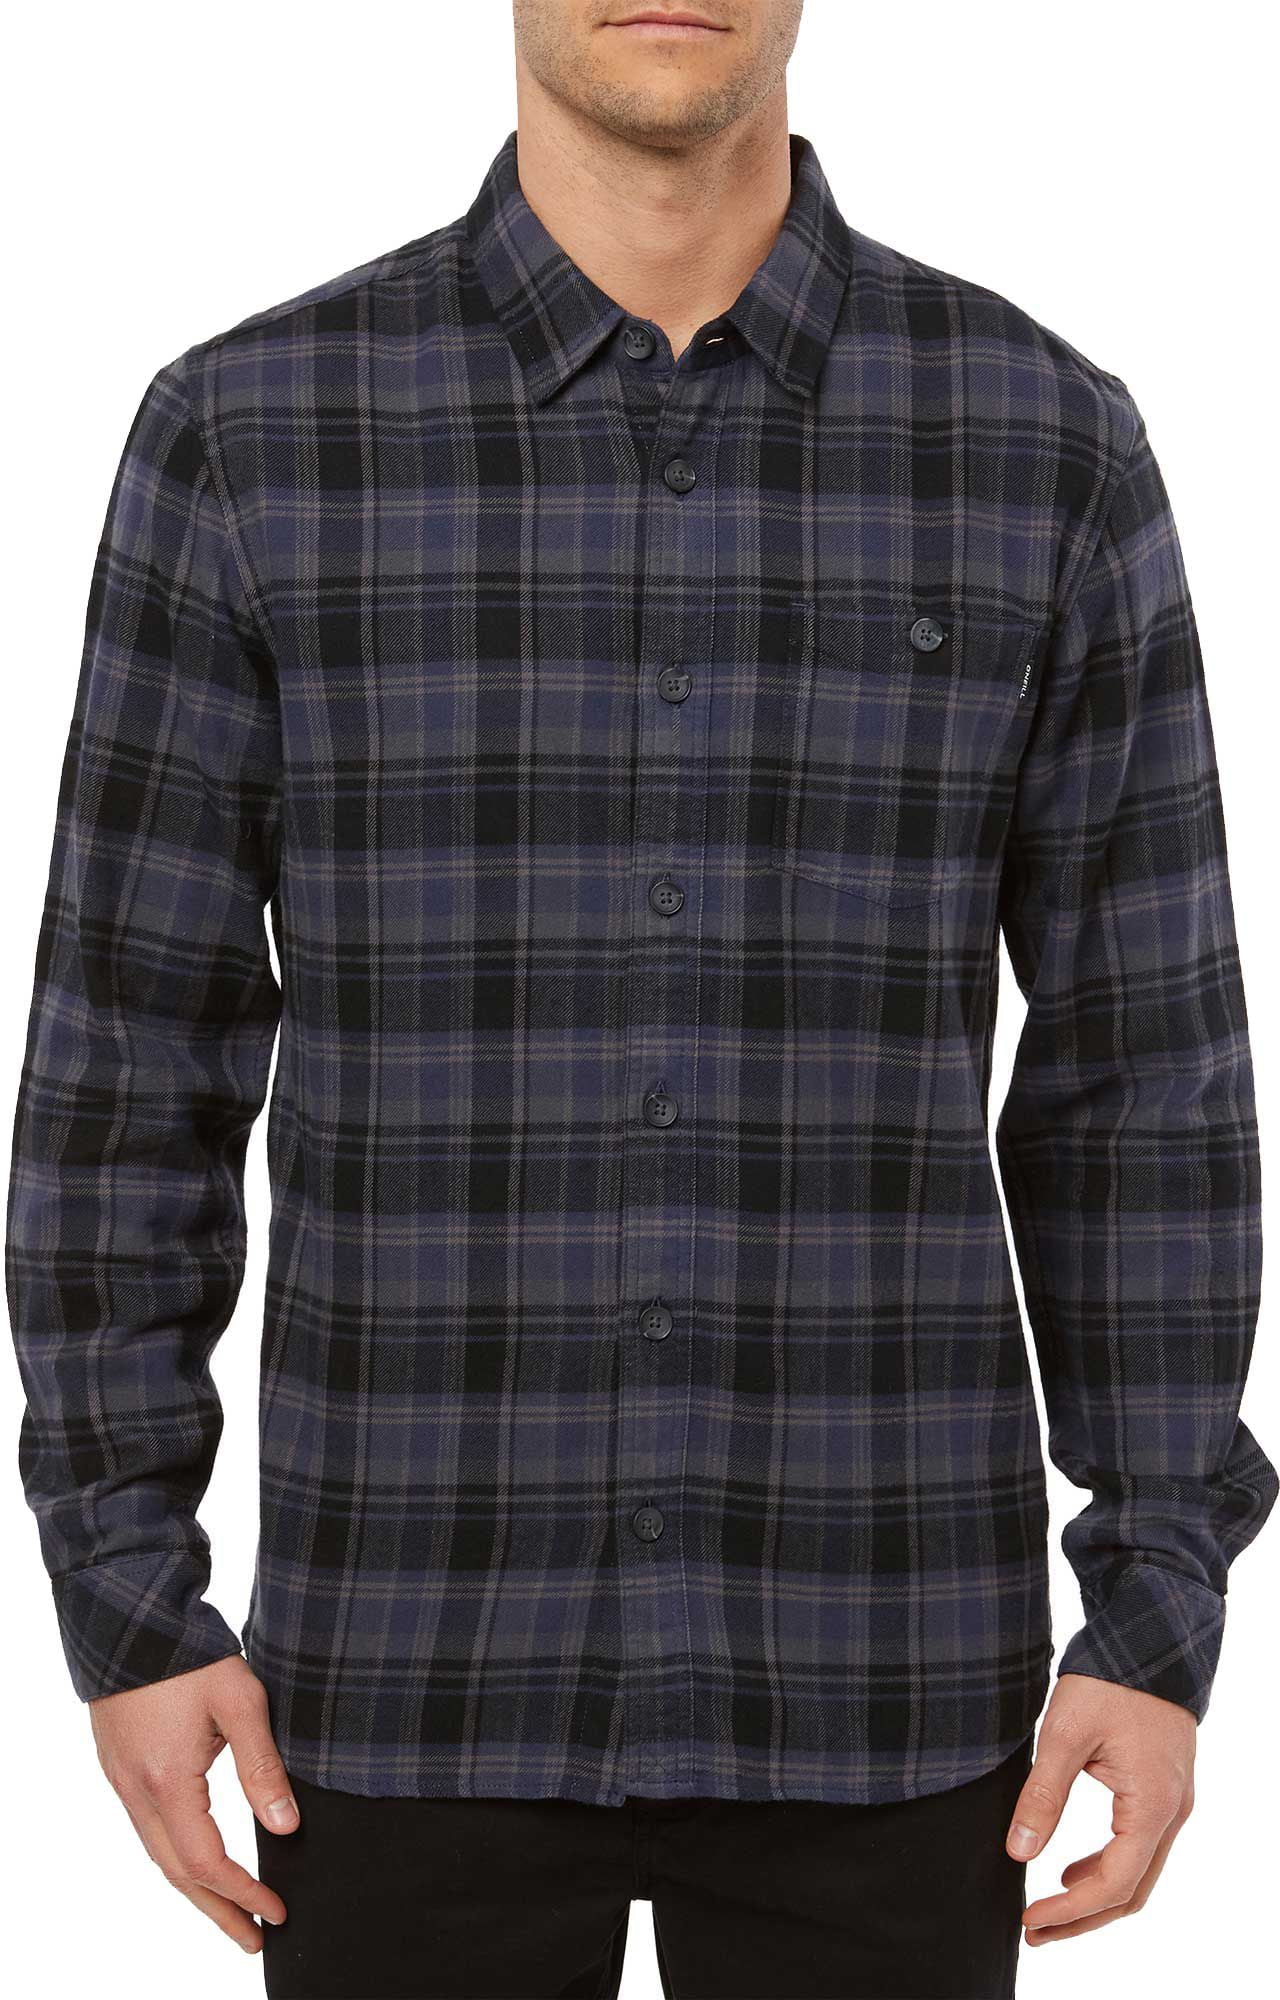 ONEILL Mens Wilong Sleevehire Flannel Shirt